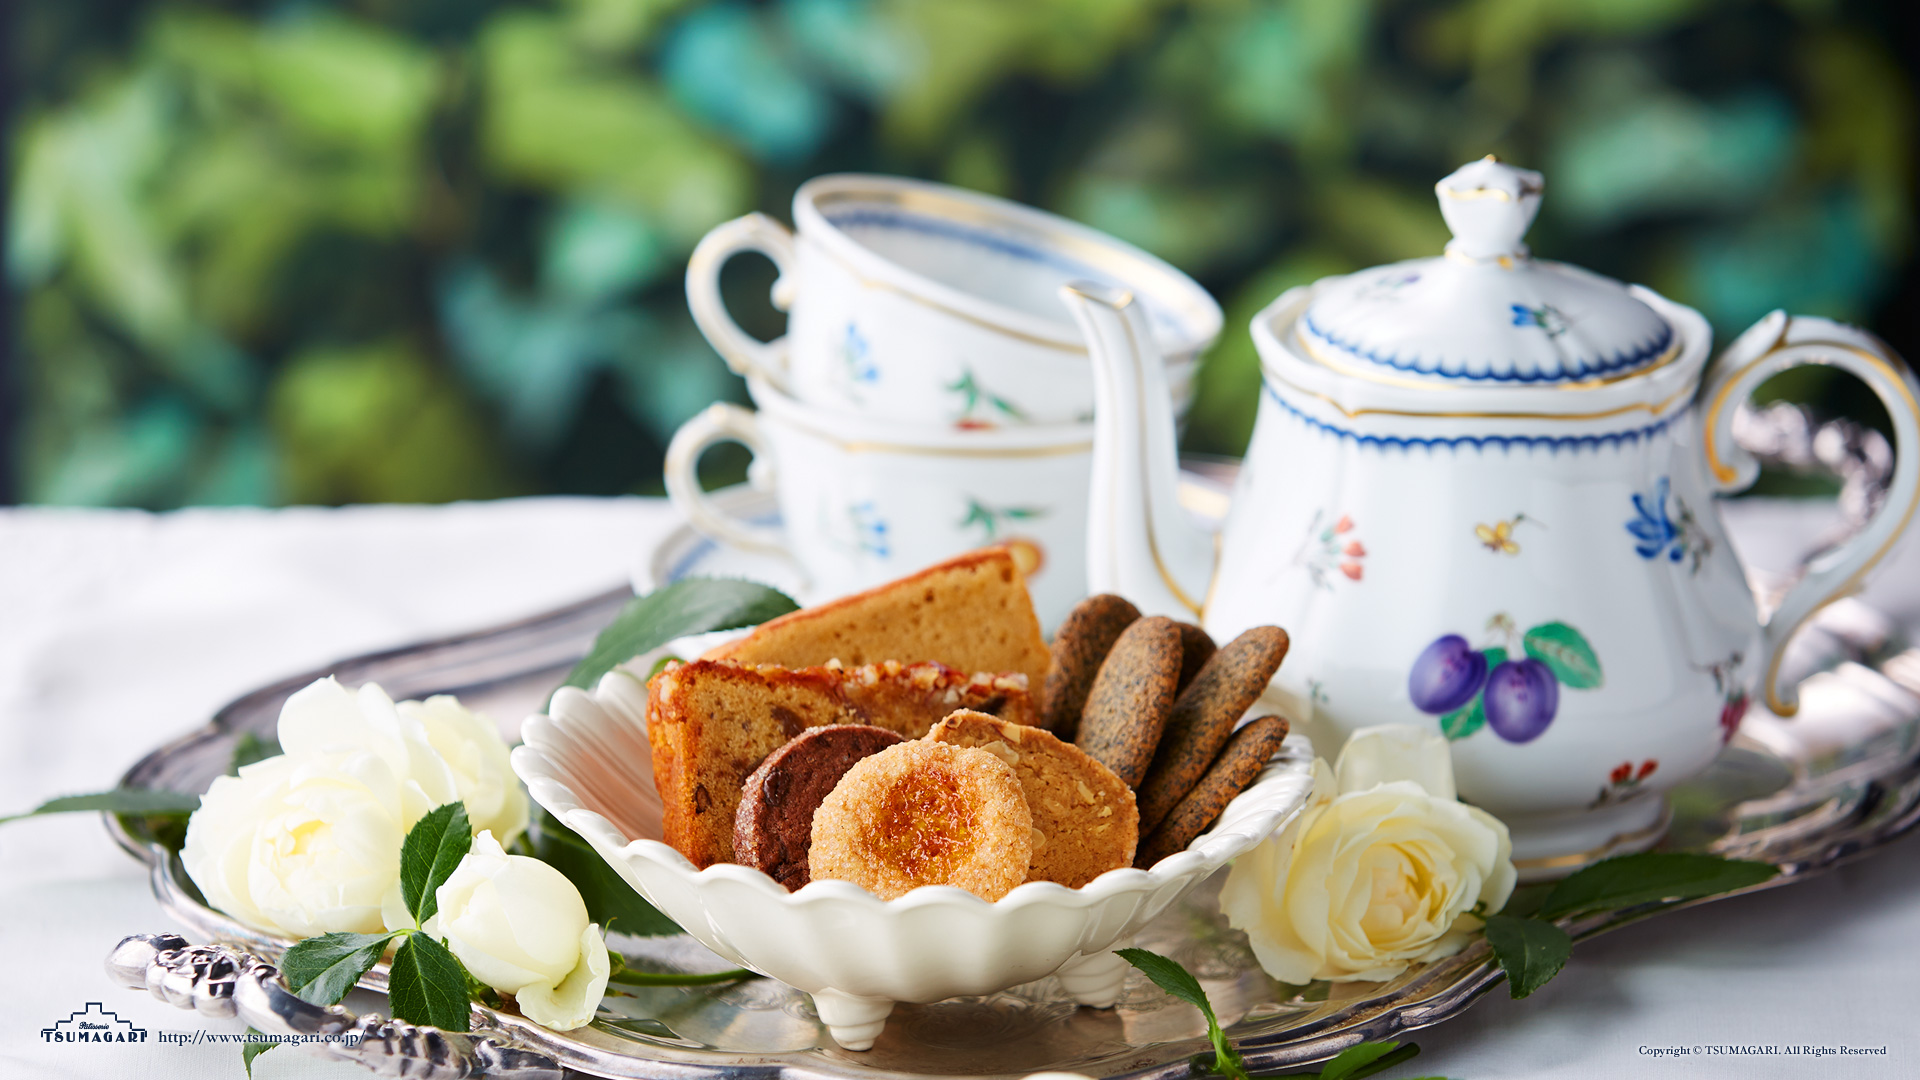 壁紙ダウンロード 紅茶が似合う優雅な午後 ケーキハウス ツマガリのオンラインショップ